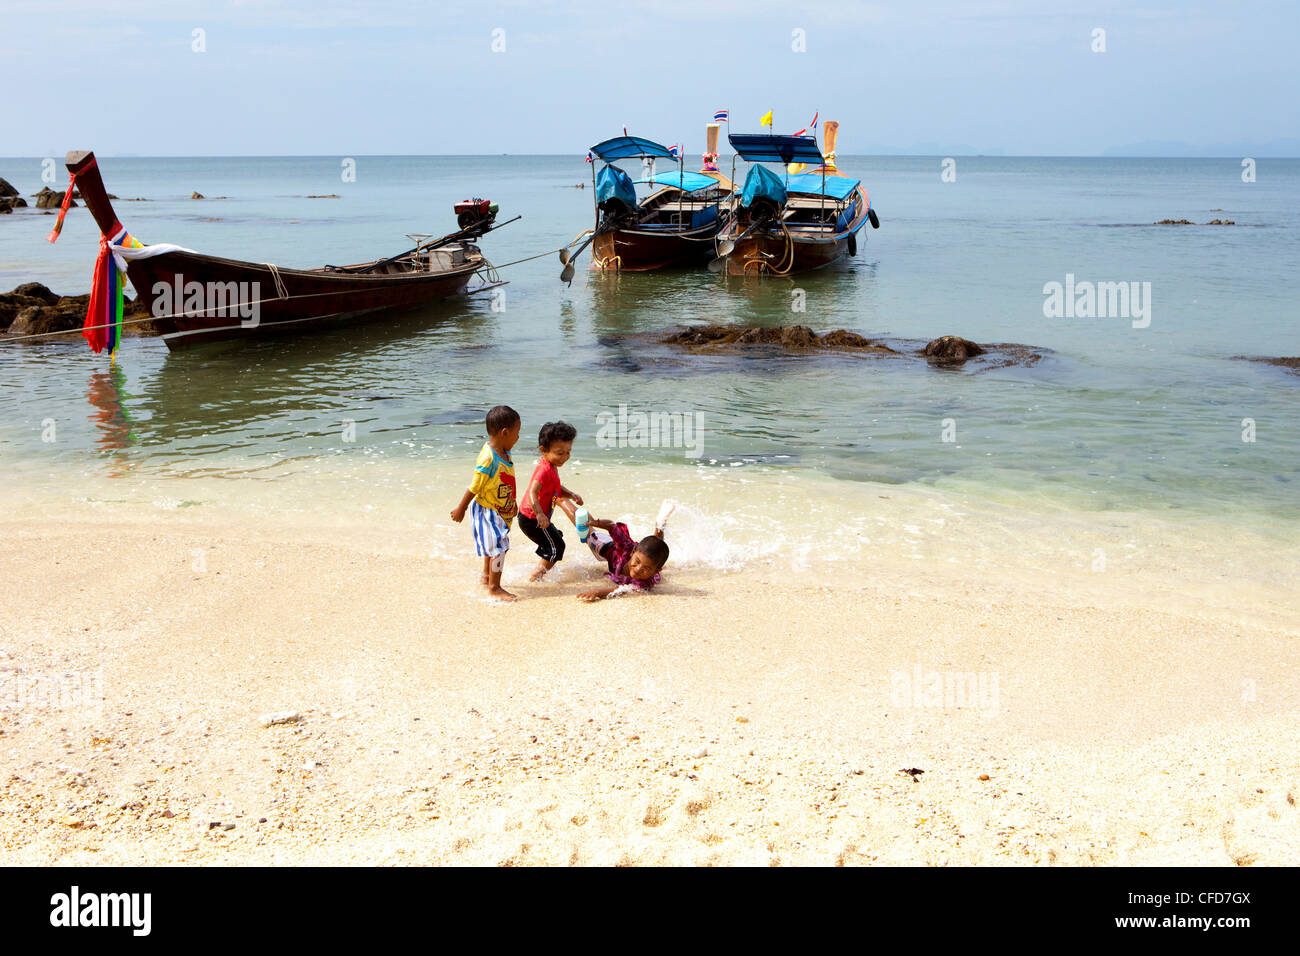 Los niños tailandeses jugando en la playa cerca de botes de cola larga, Koh Jum, Mar de Andaman, Tailandia Foto de stock